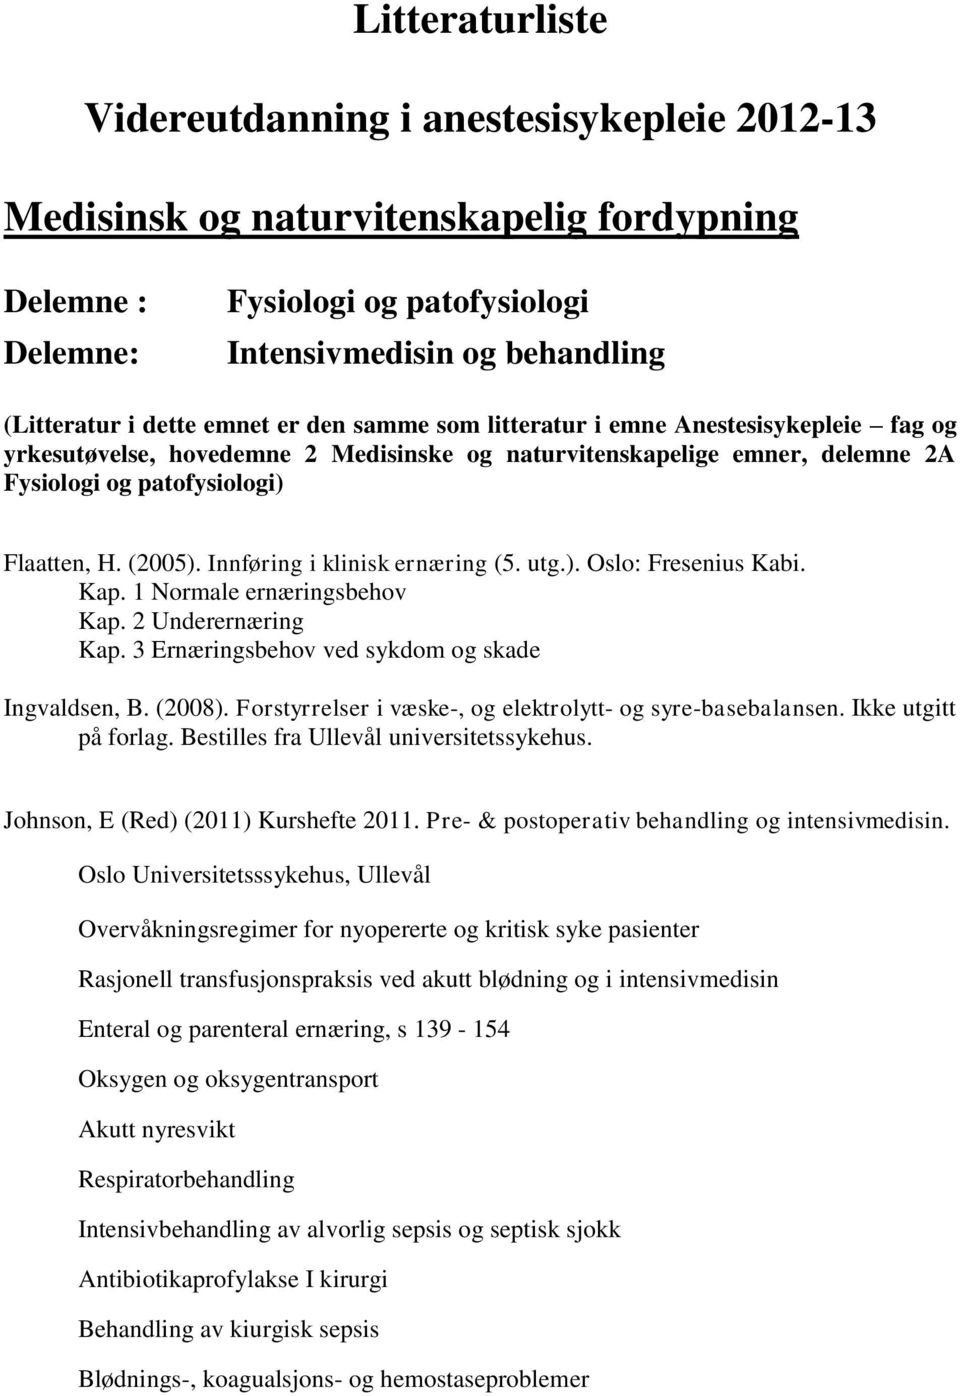 Innføring i klinisk ernæring (5. utg.). Oslo: Fresenius Kabi. Kap. 1 Normale ernæringsbehov Kap. 2 Underernæring Kap. 3 Ernæringsbehov ved sykdom og skade Ingvaldsen, B. (2008).